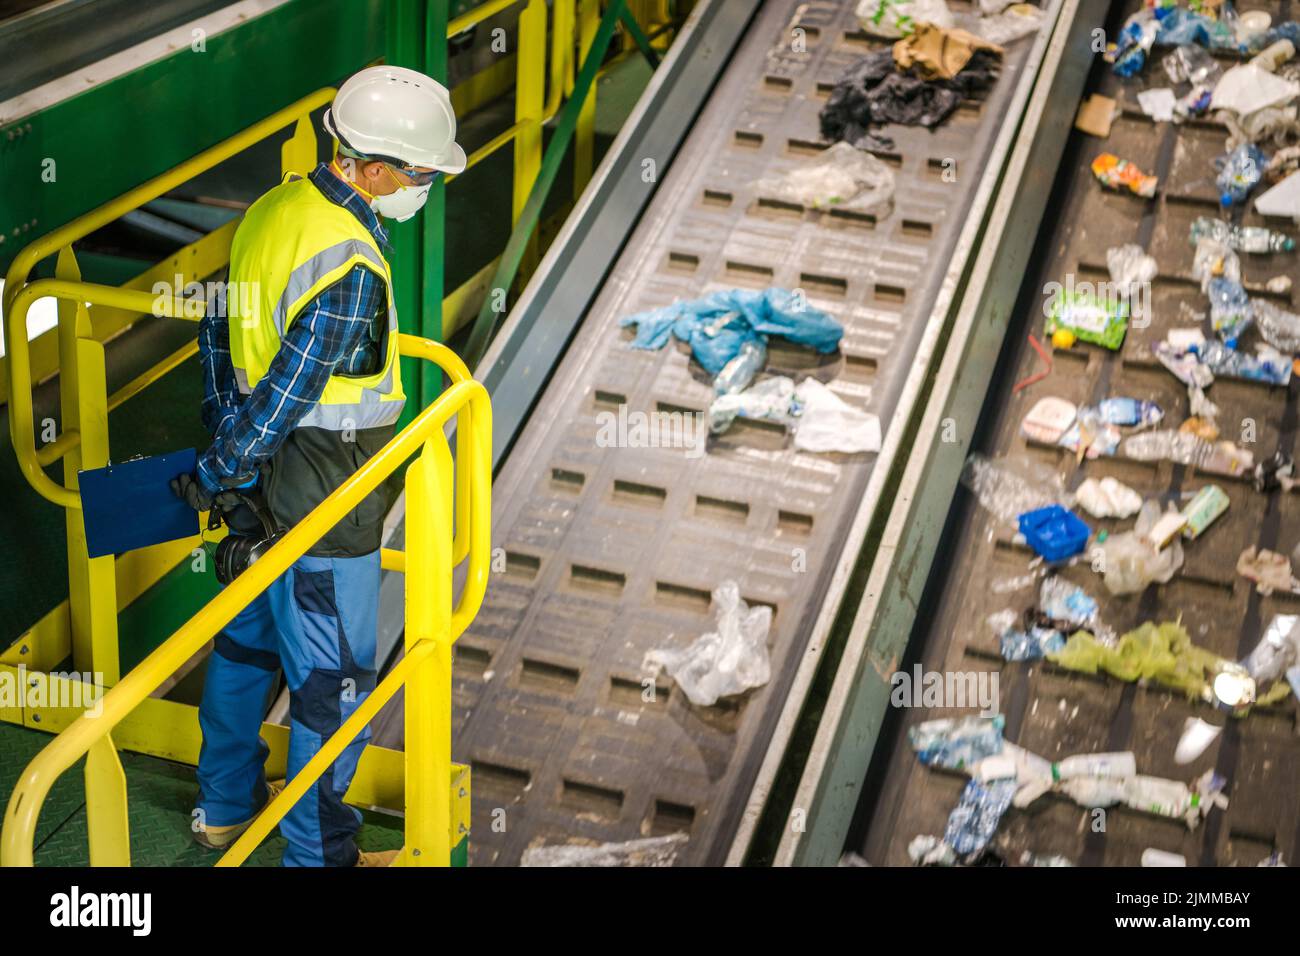 Abfallsortierung Facility Management Control. Der Bediener Der Abfallförderer Führt Die Tägliche Überprüfung Durch. Stockfoto